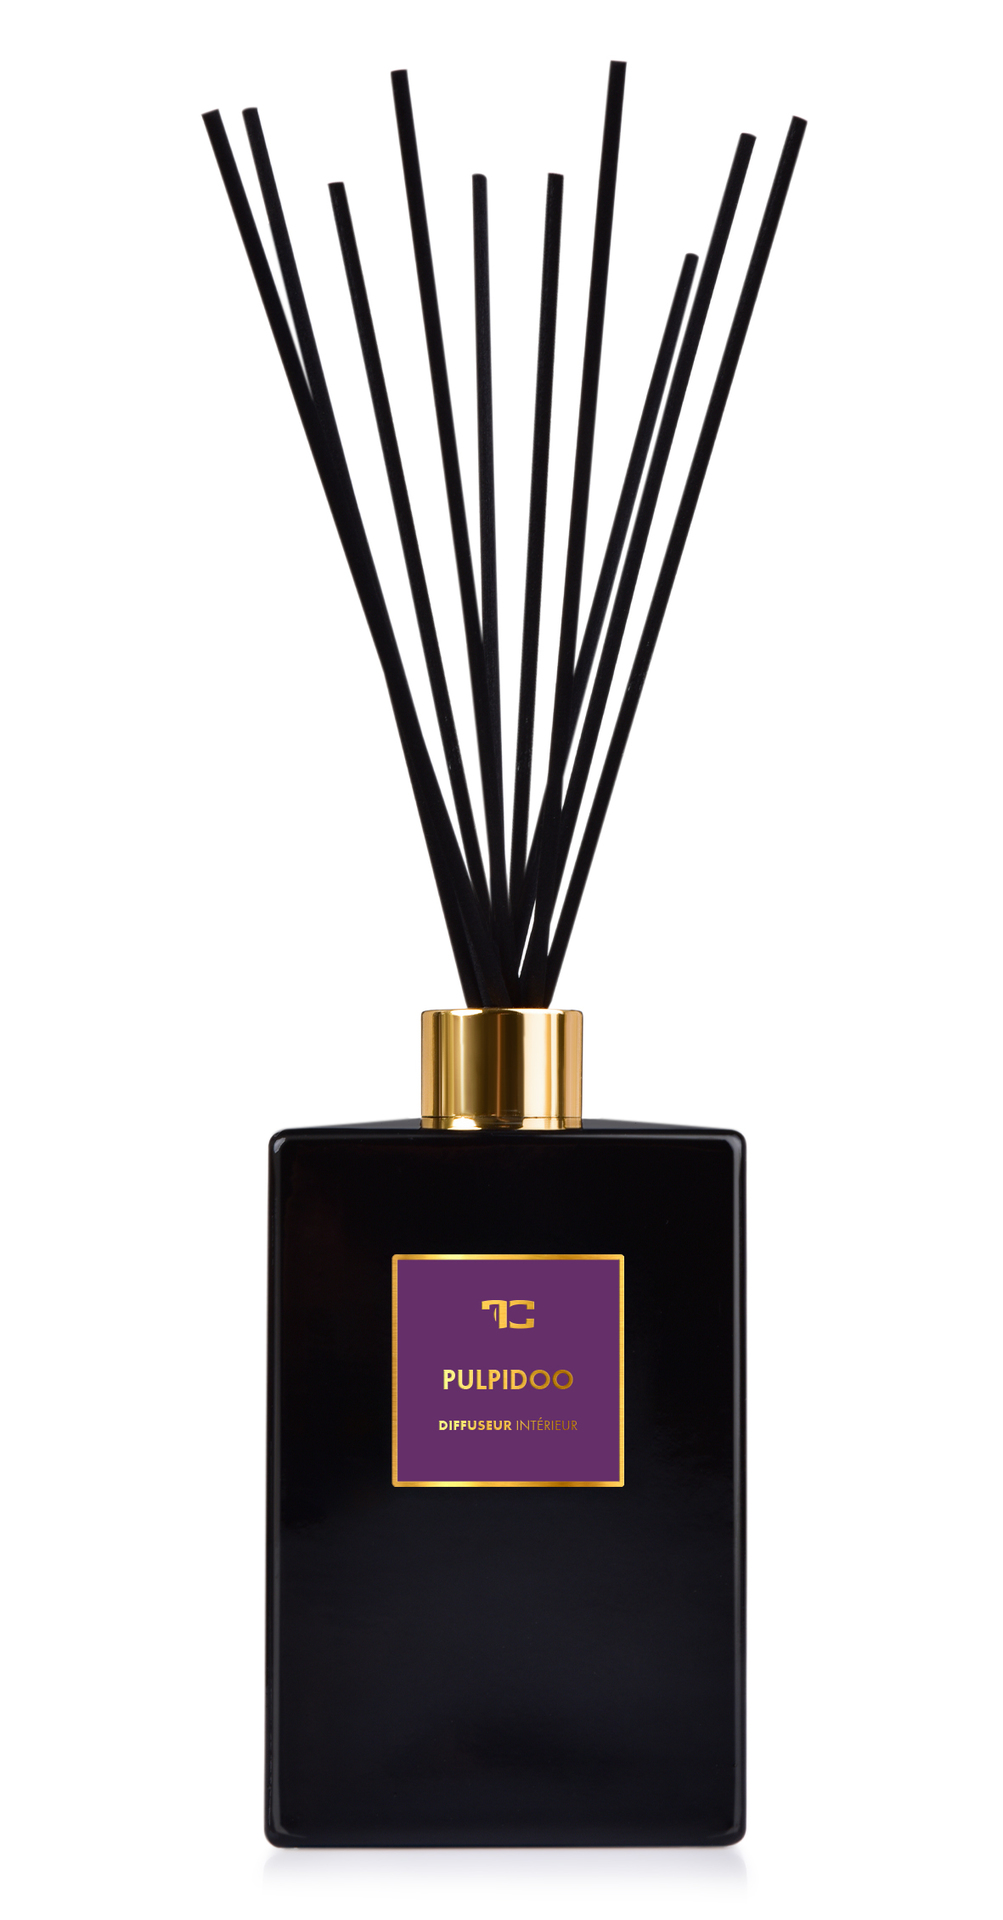 Interiérový tyčinkový bytový parfém PULPIDOO DIFFUSEUR INTÉRIEUR